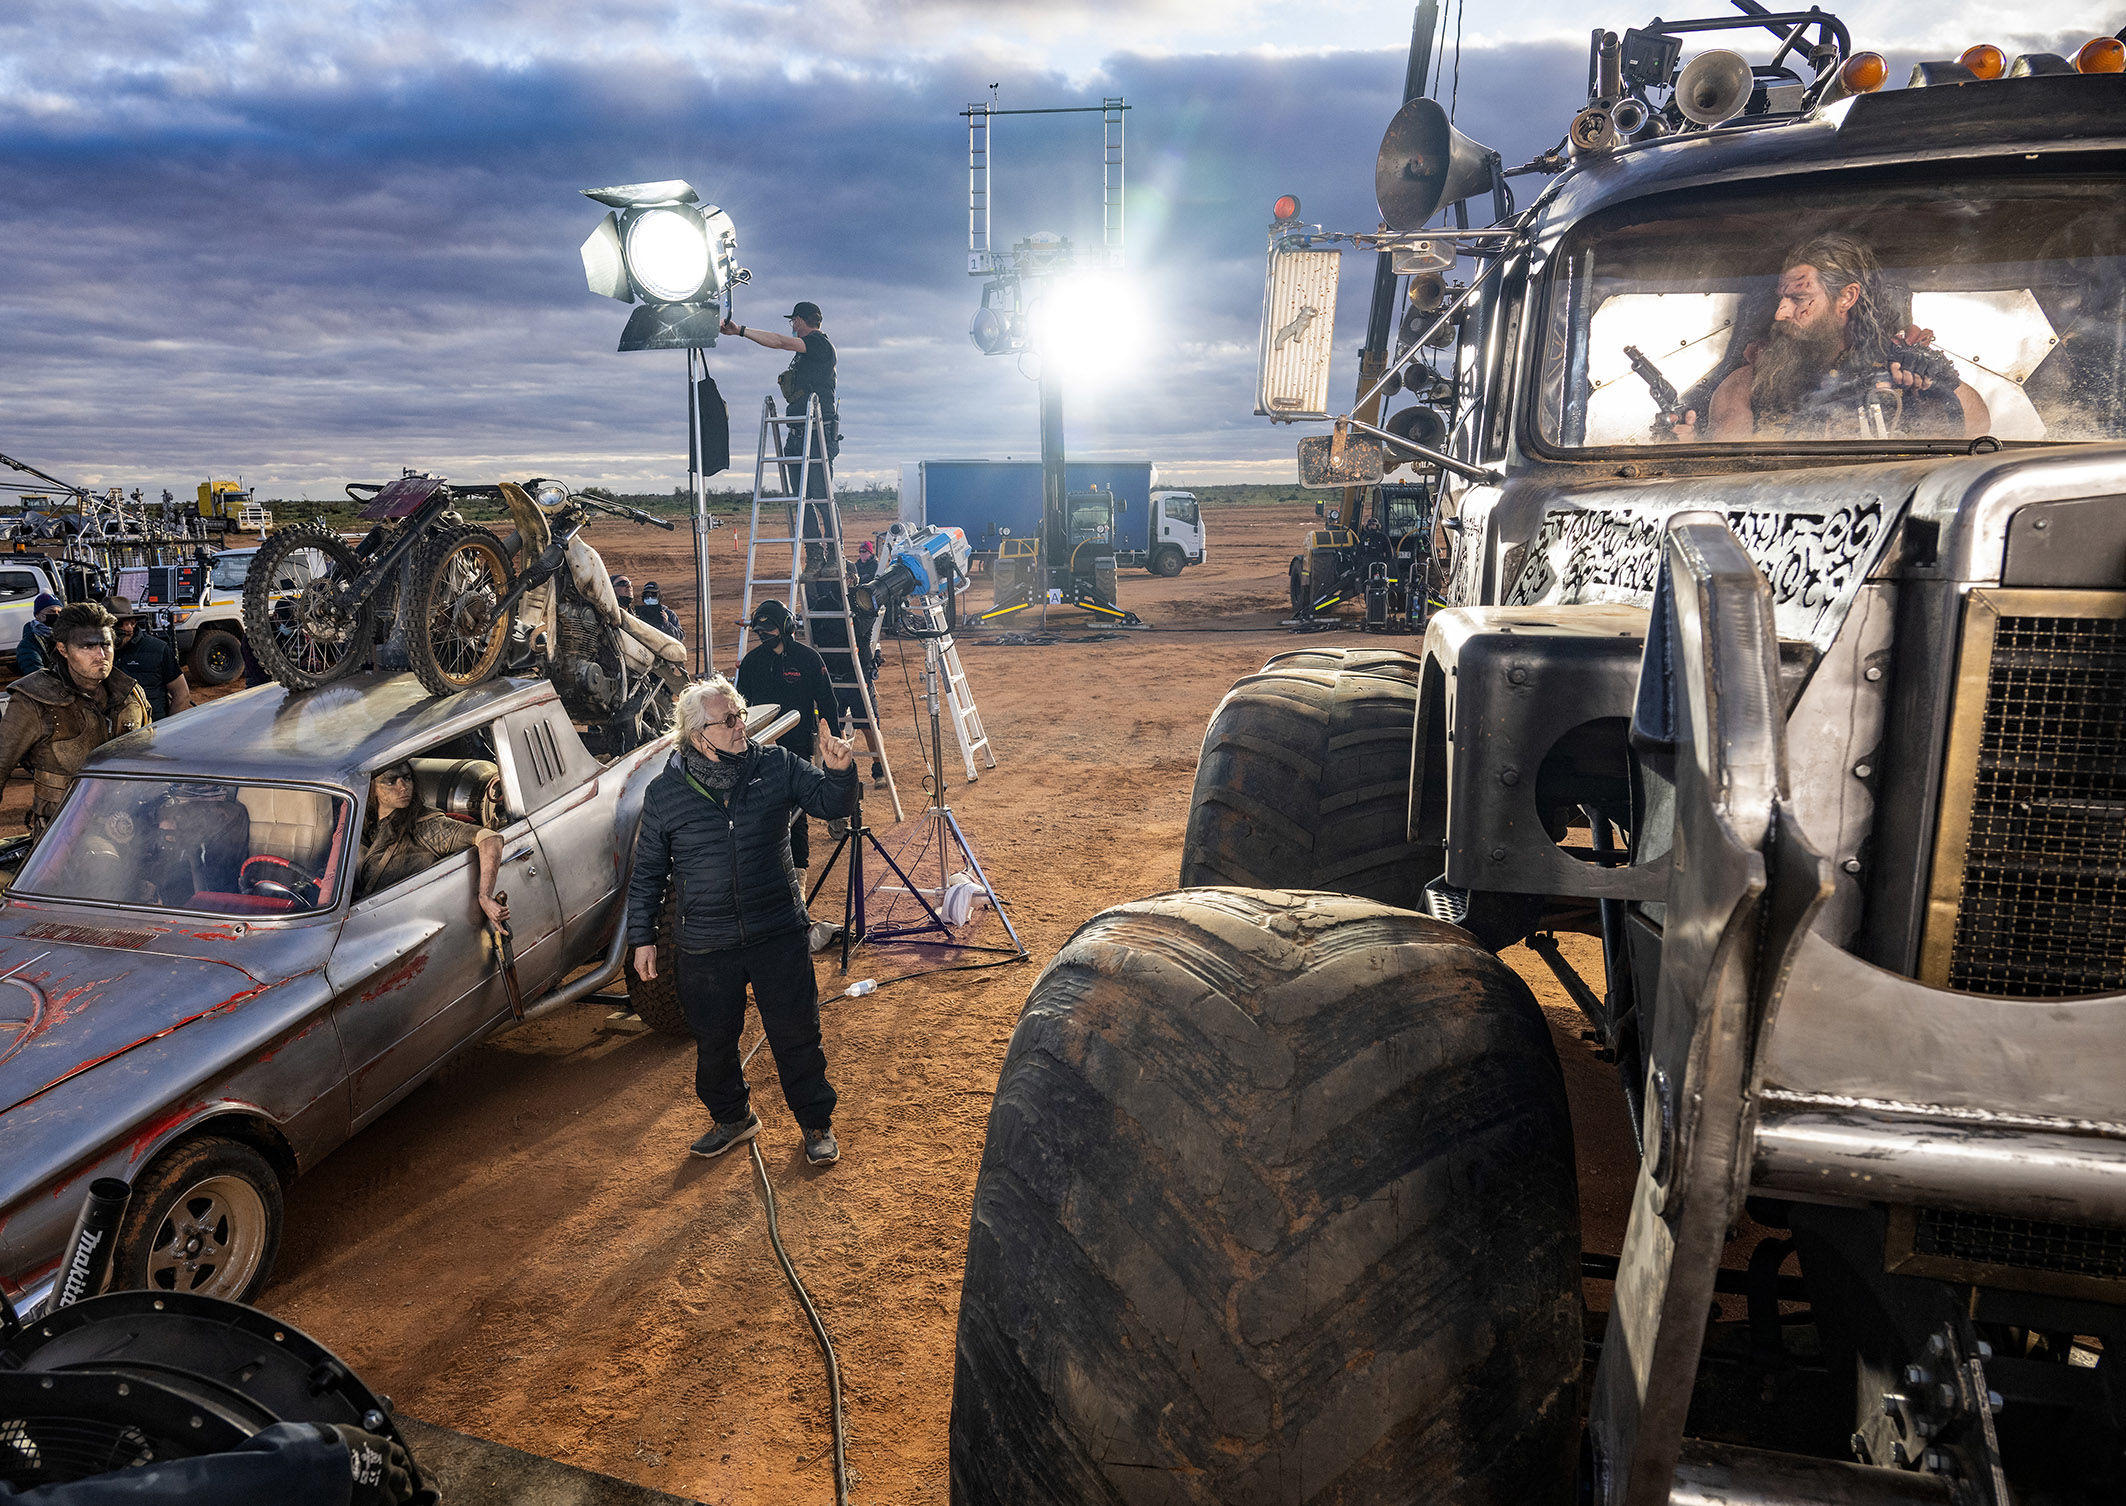 Le réalisateur George Miller (au centre) donnant des instructions sur le tournage de l'aventure «Furiosa» avec (de gauche à droite) Tom Burke, Anya Taylor-Joy (dans la voiture) et Chris Hemsworth (dans le camion). Warner Bros/Cr. Jasin Boland